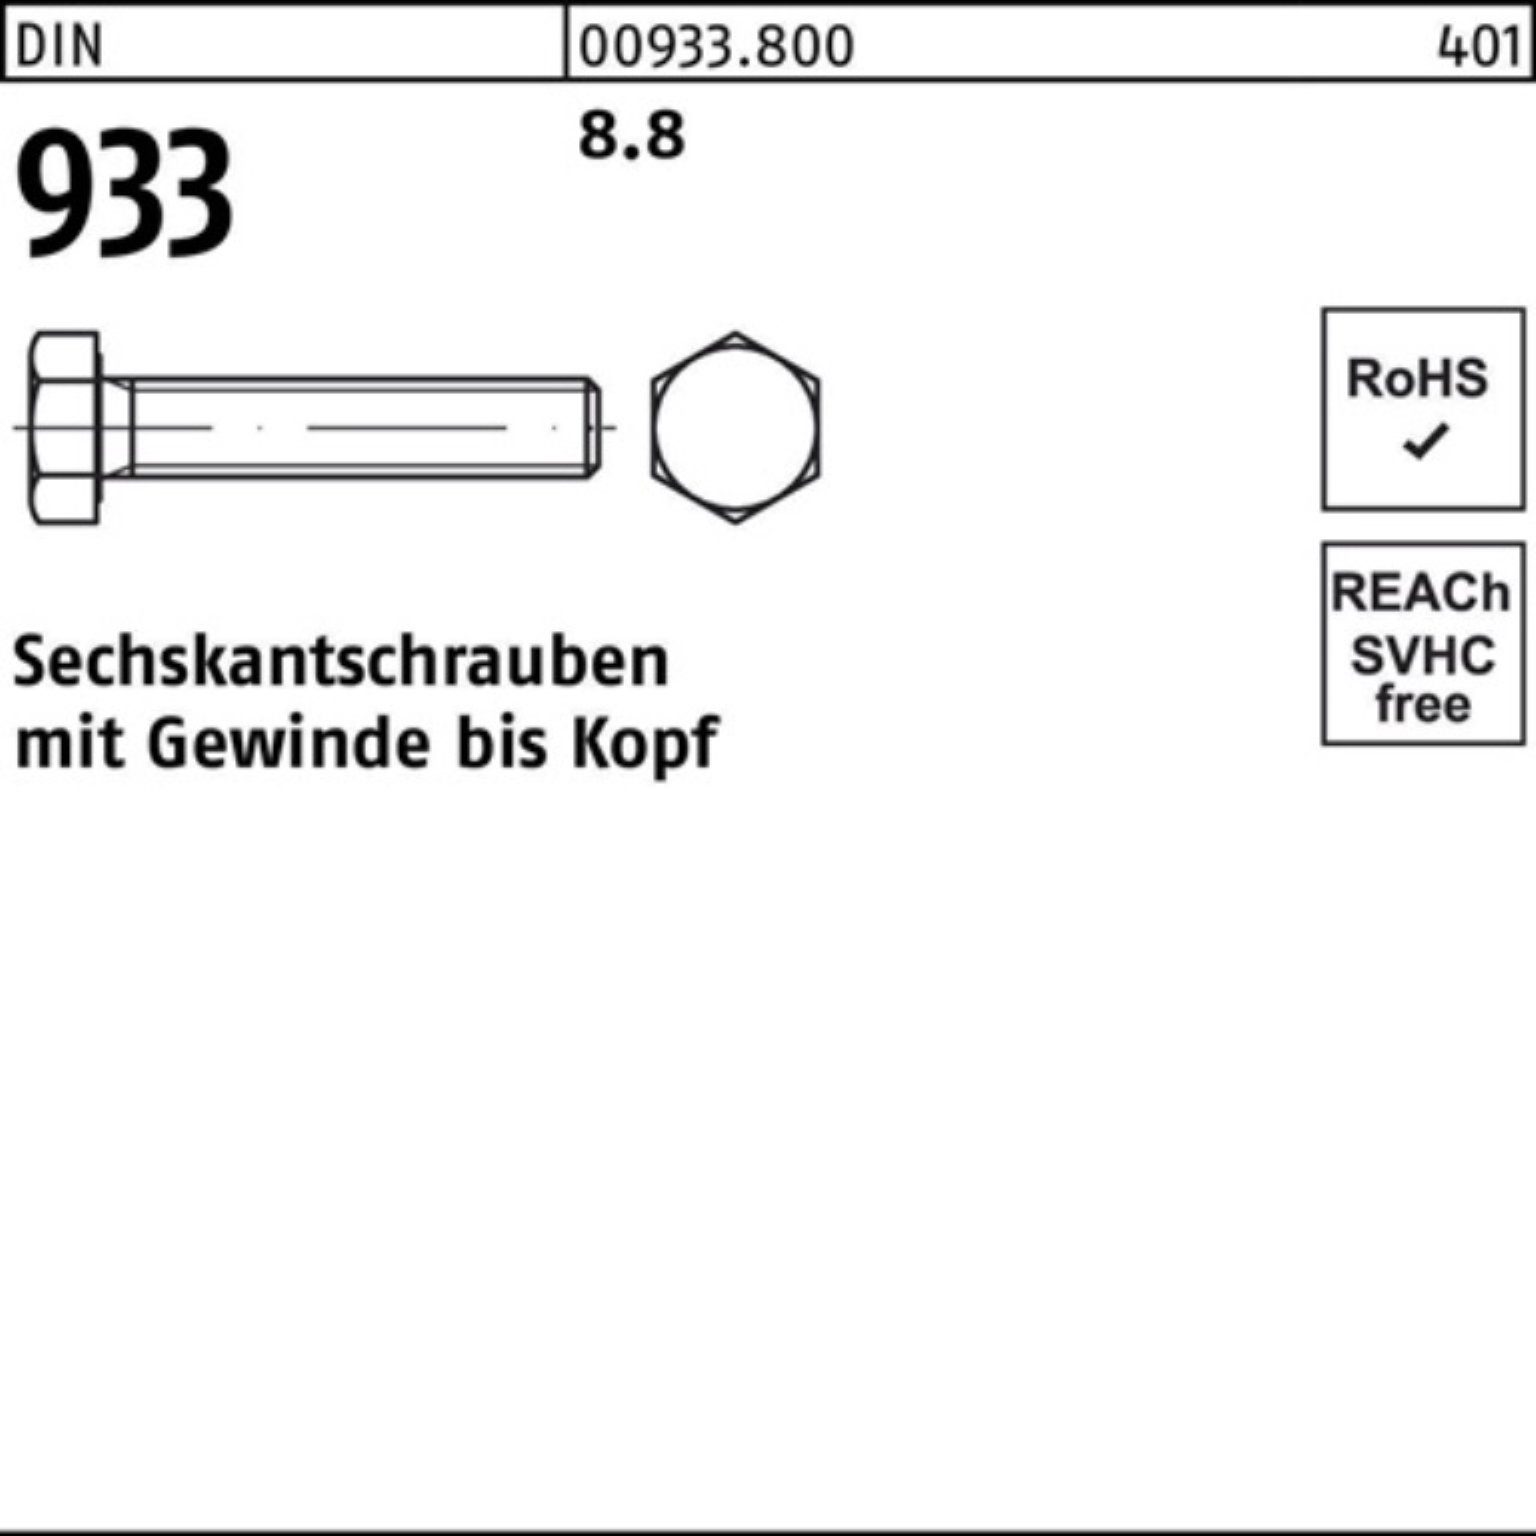 Reyher Sechskantschraube 85 933 VG 100er Pack DIN Sechskantschraube 933 10 M27x DIN Stück 8.8